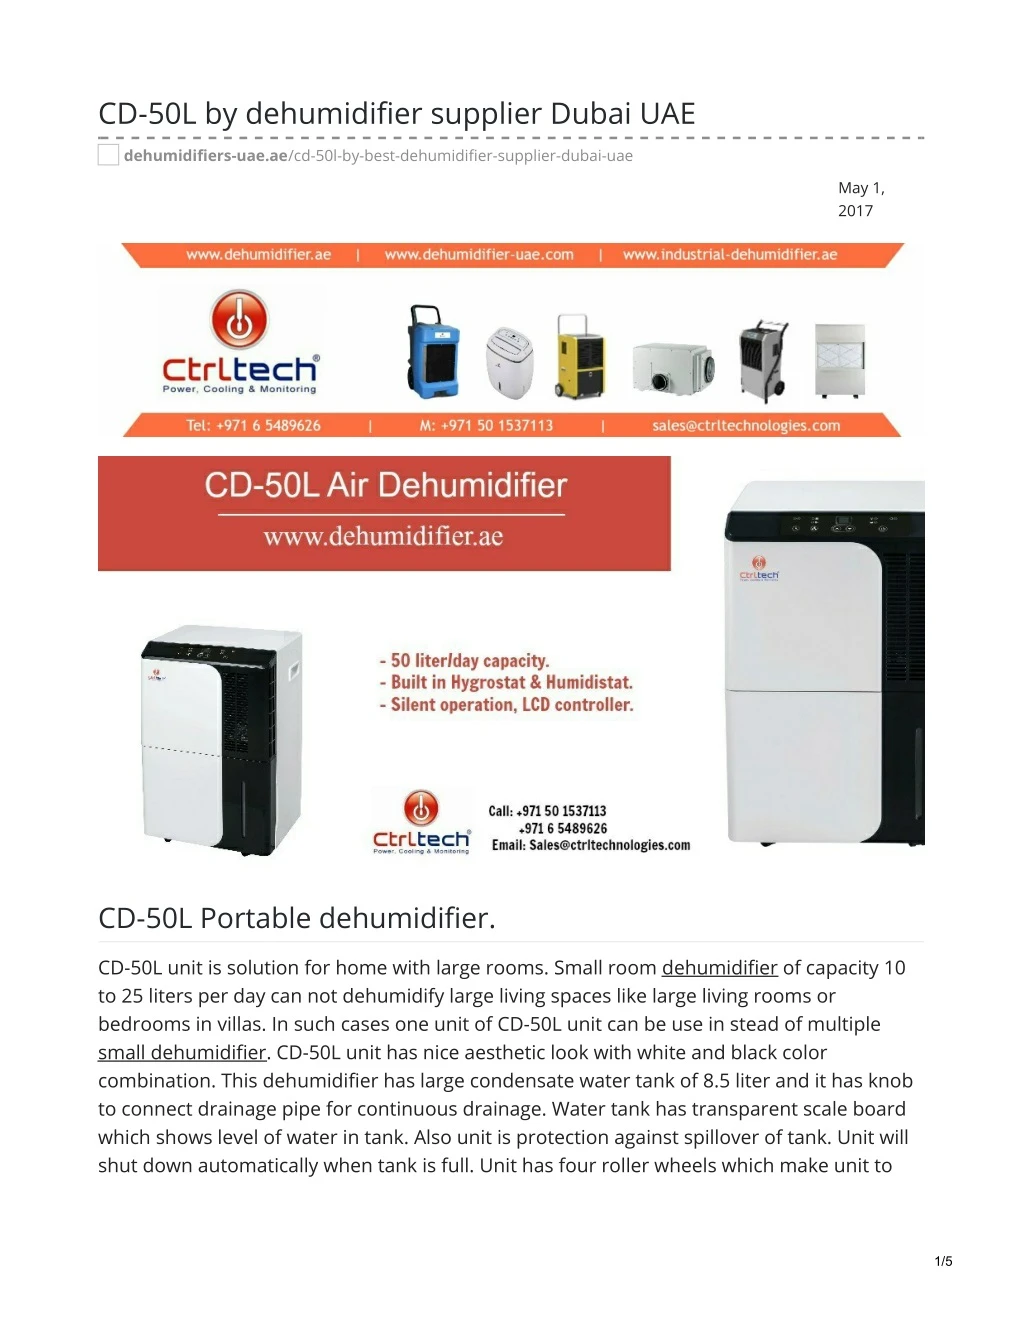 cd 50l by dehumidifier supplier dubai uae